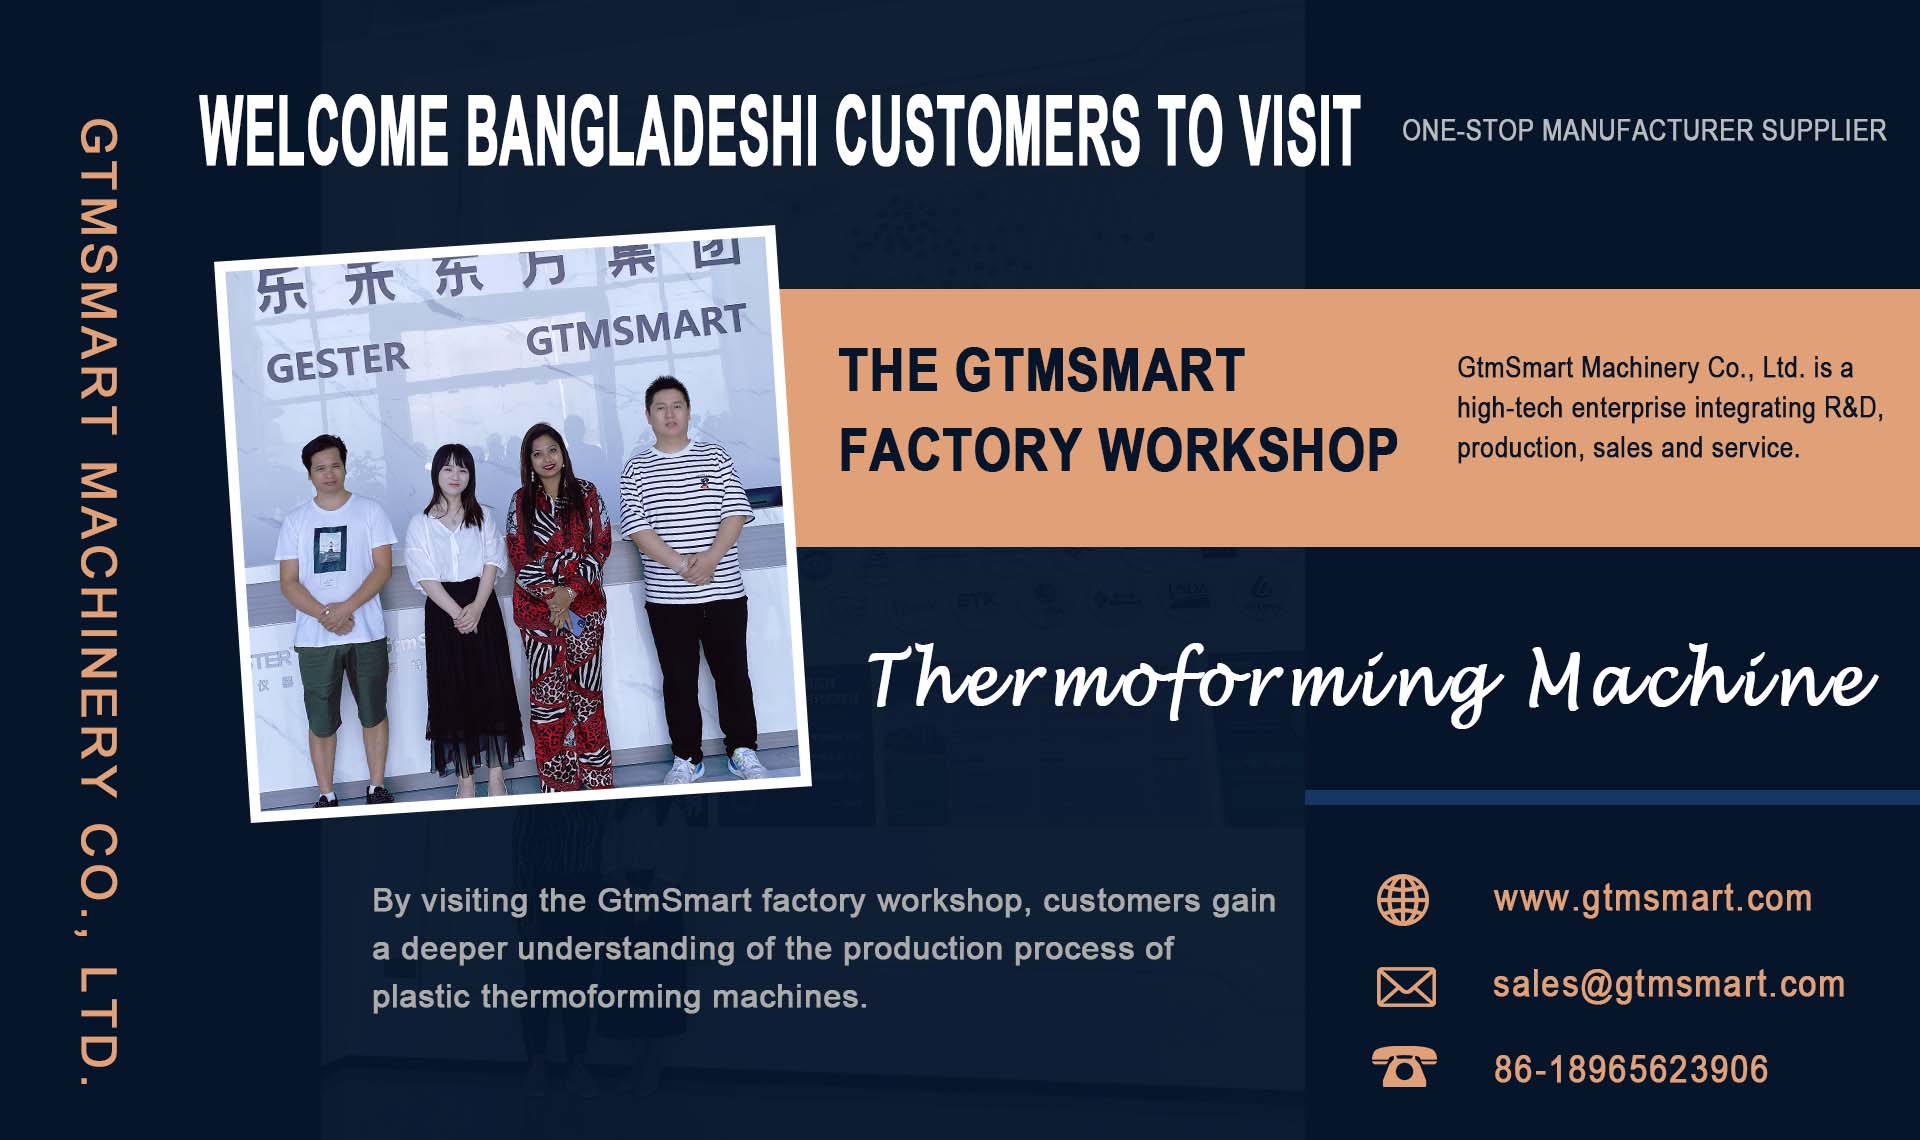 ברוכים הבאים לקוחות בנגלדש לבקר בסדנת המפעל של GtmSmart